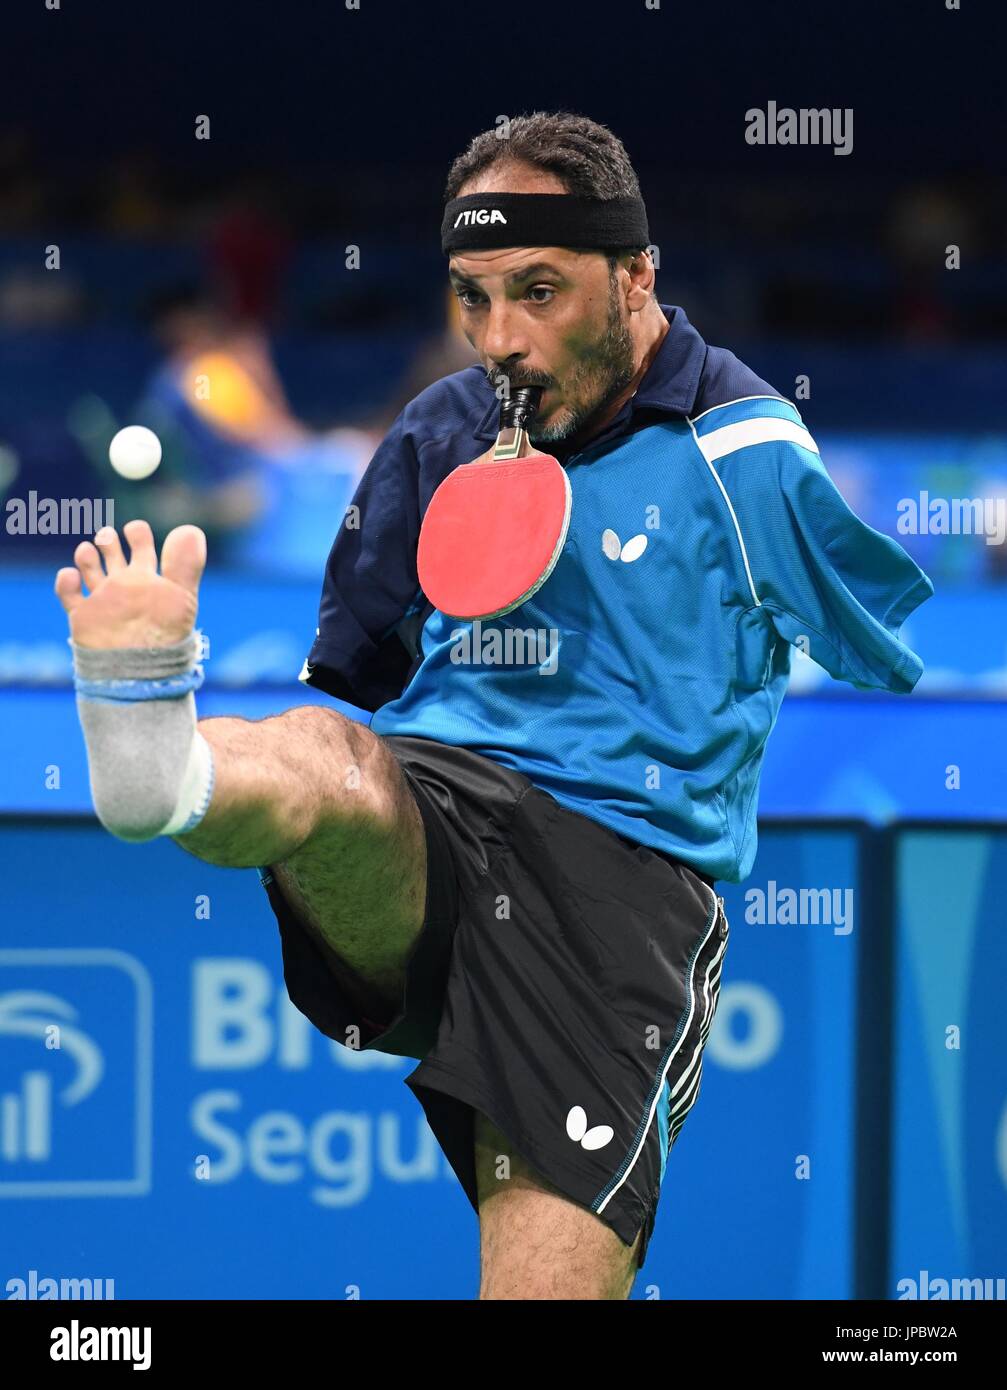 Ibrahim Hamadtou, un joueur de tennis de table Égyptienne sans bras, lance  le ballon à l'aide de son pied droit lors d'un match contre la  Grande-Bretagne David Wetherill dans les préliminaires de